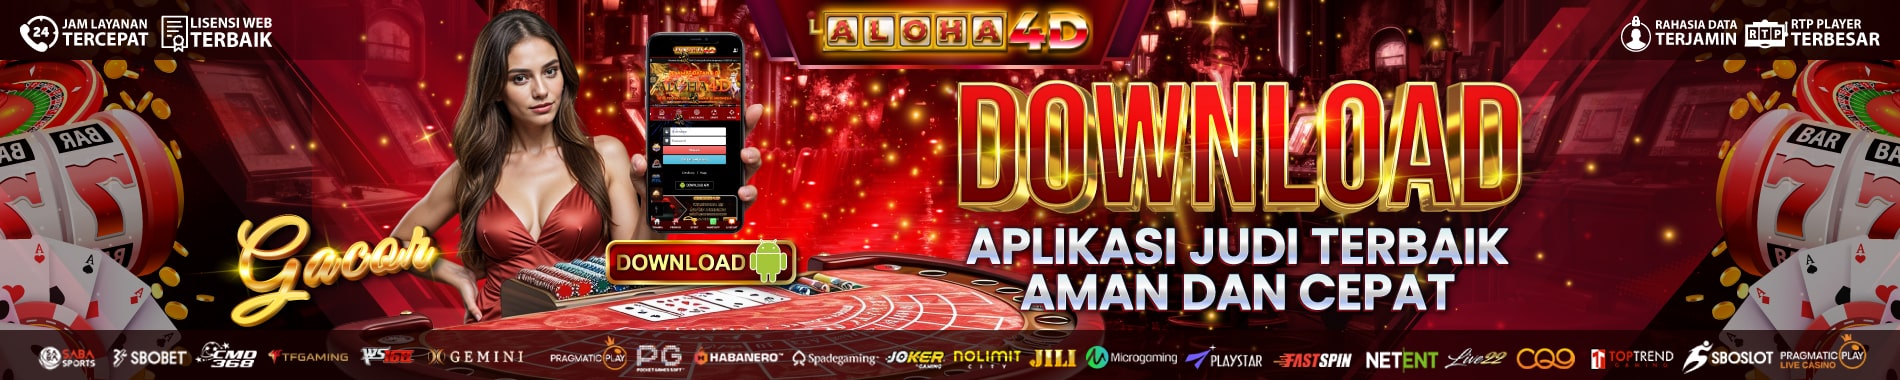 DOWNLOAD APK aloha4d